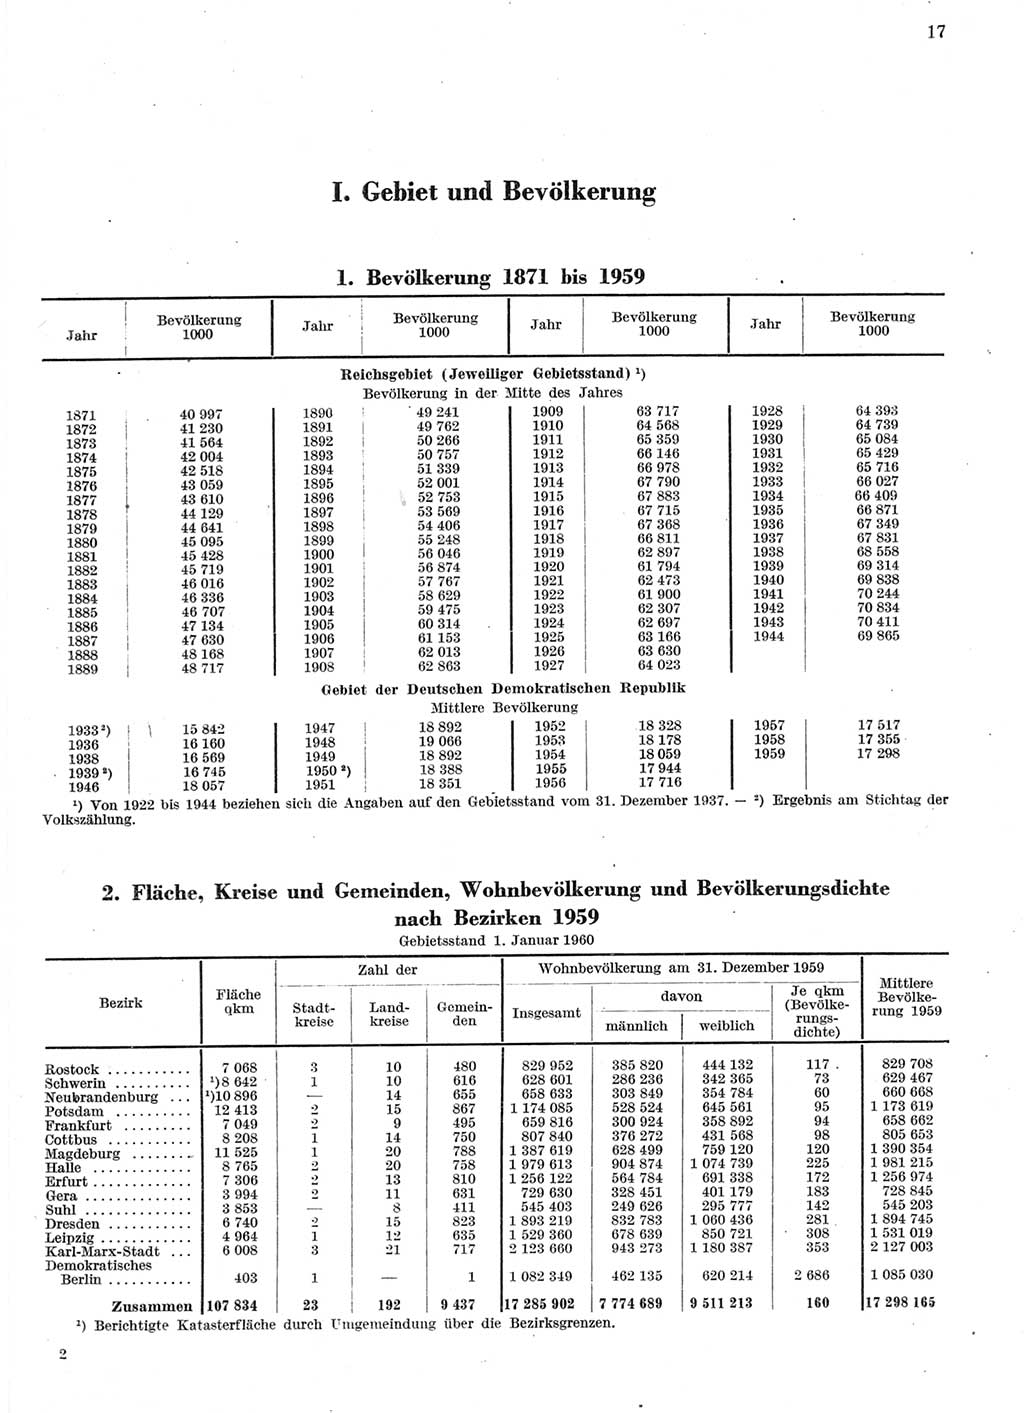 Statistisches Jahrbuch der Deutschen Demokratischen Republik (DDR) 1959, Seite 17 (Stat. Jb. DDR 1959, S. 17)